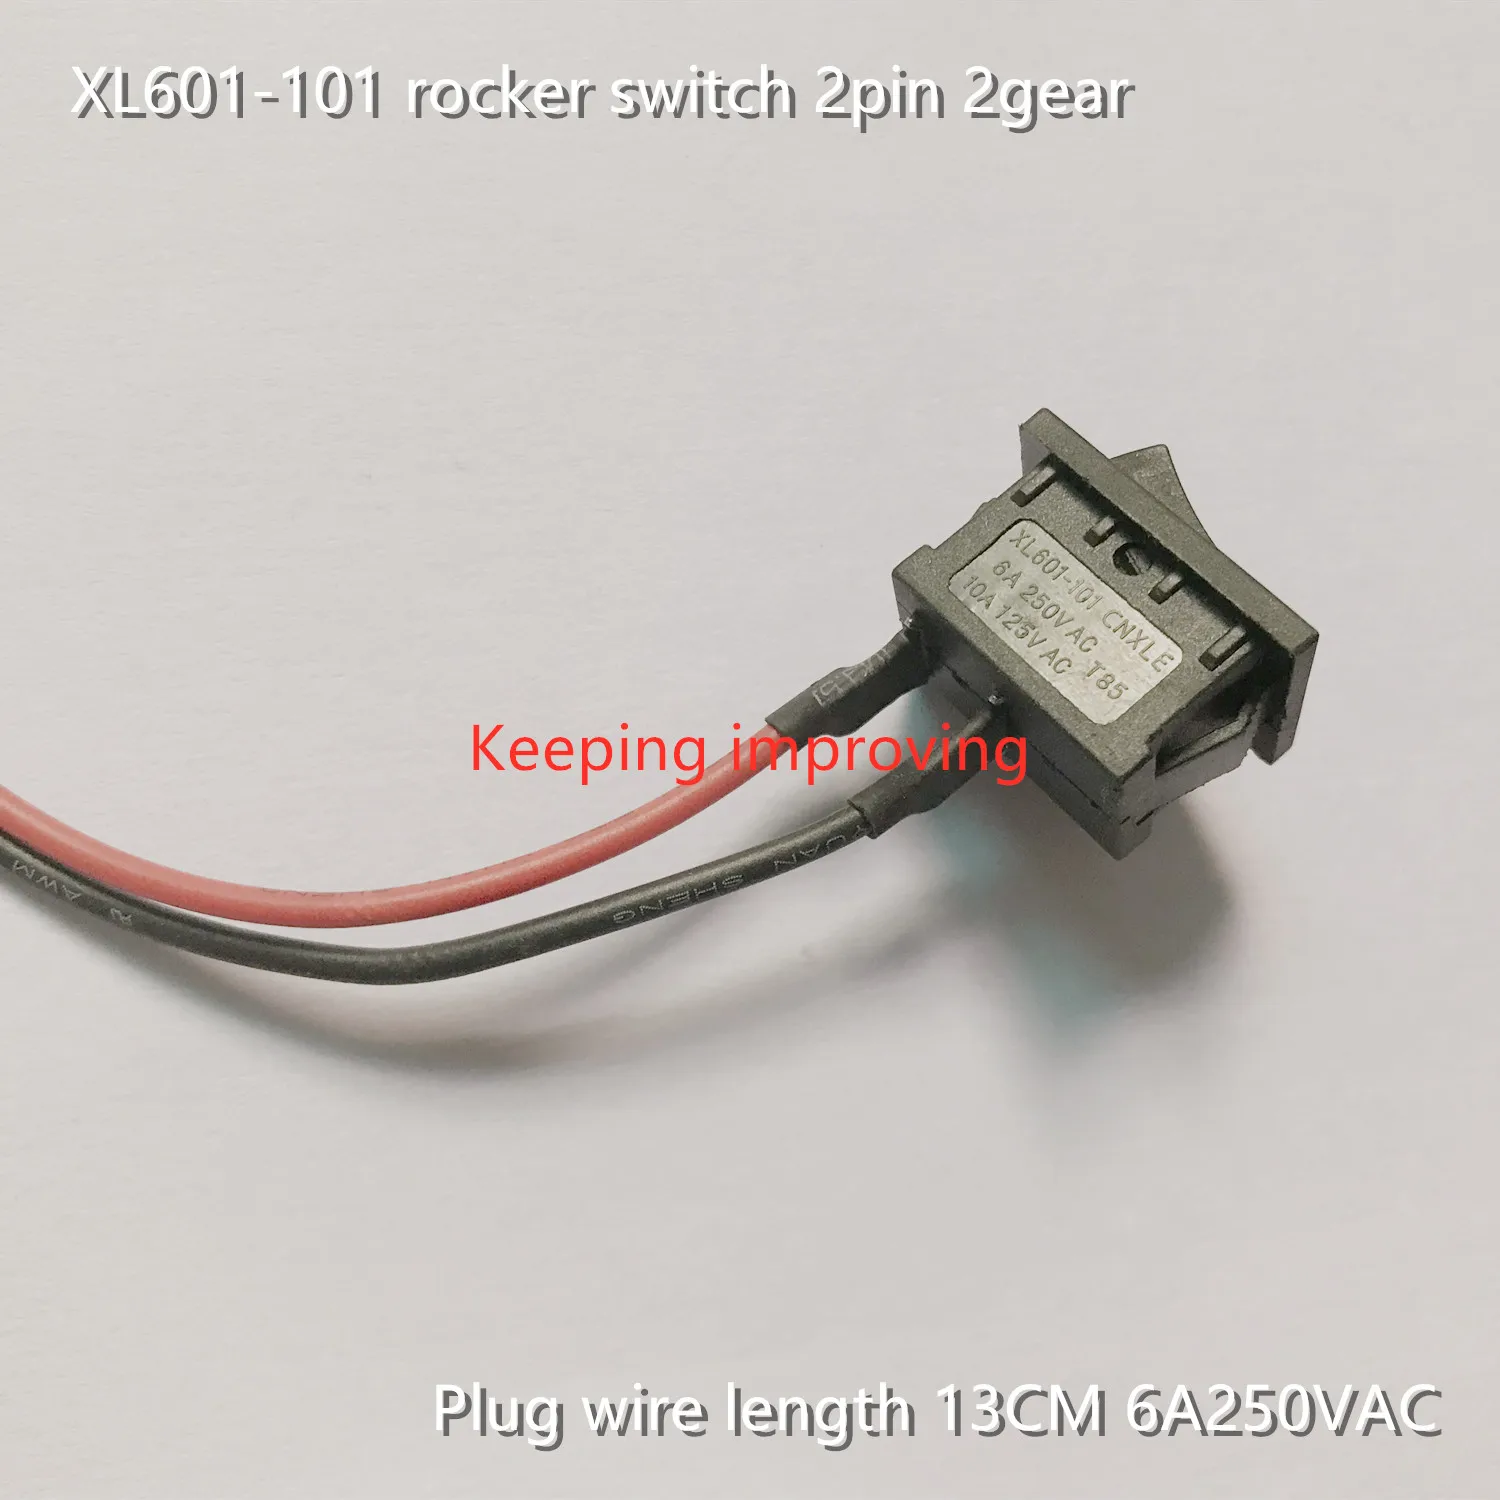 1x basculante interruptor 2 pin conmutador 15x21mm 12v 250v/6a Act/Des ip65 